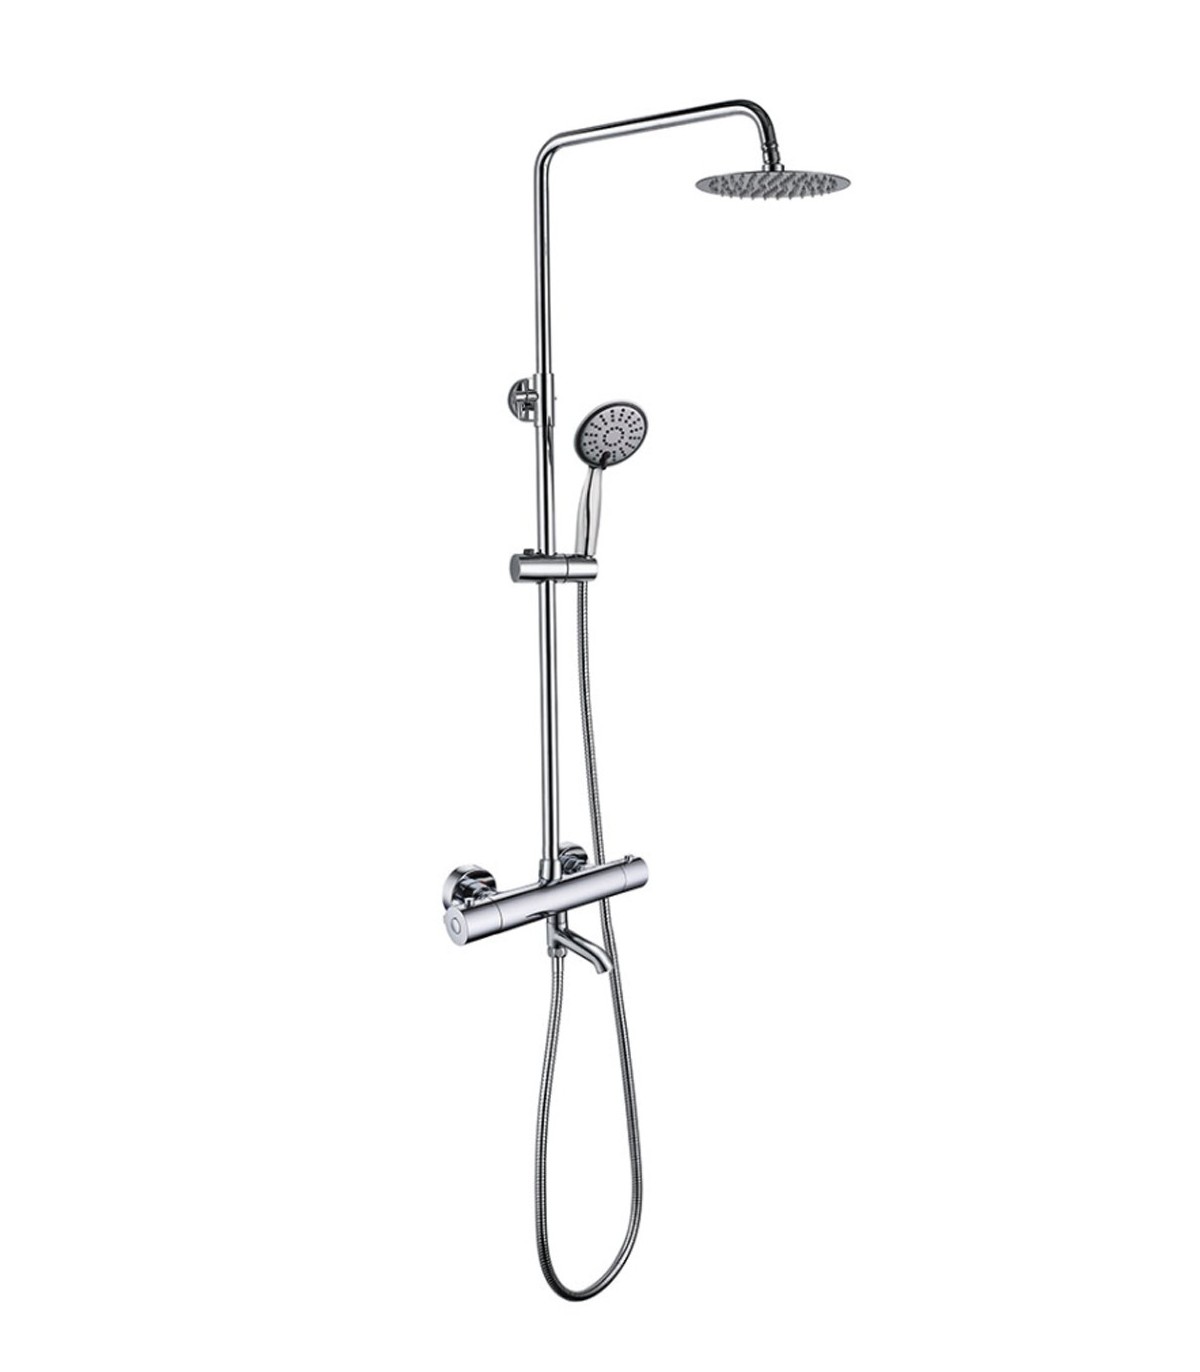 Comprar Barra de ducha termostatica redonda acero cepillado online